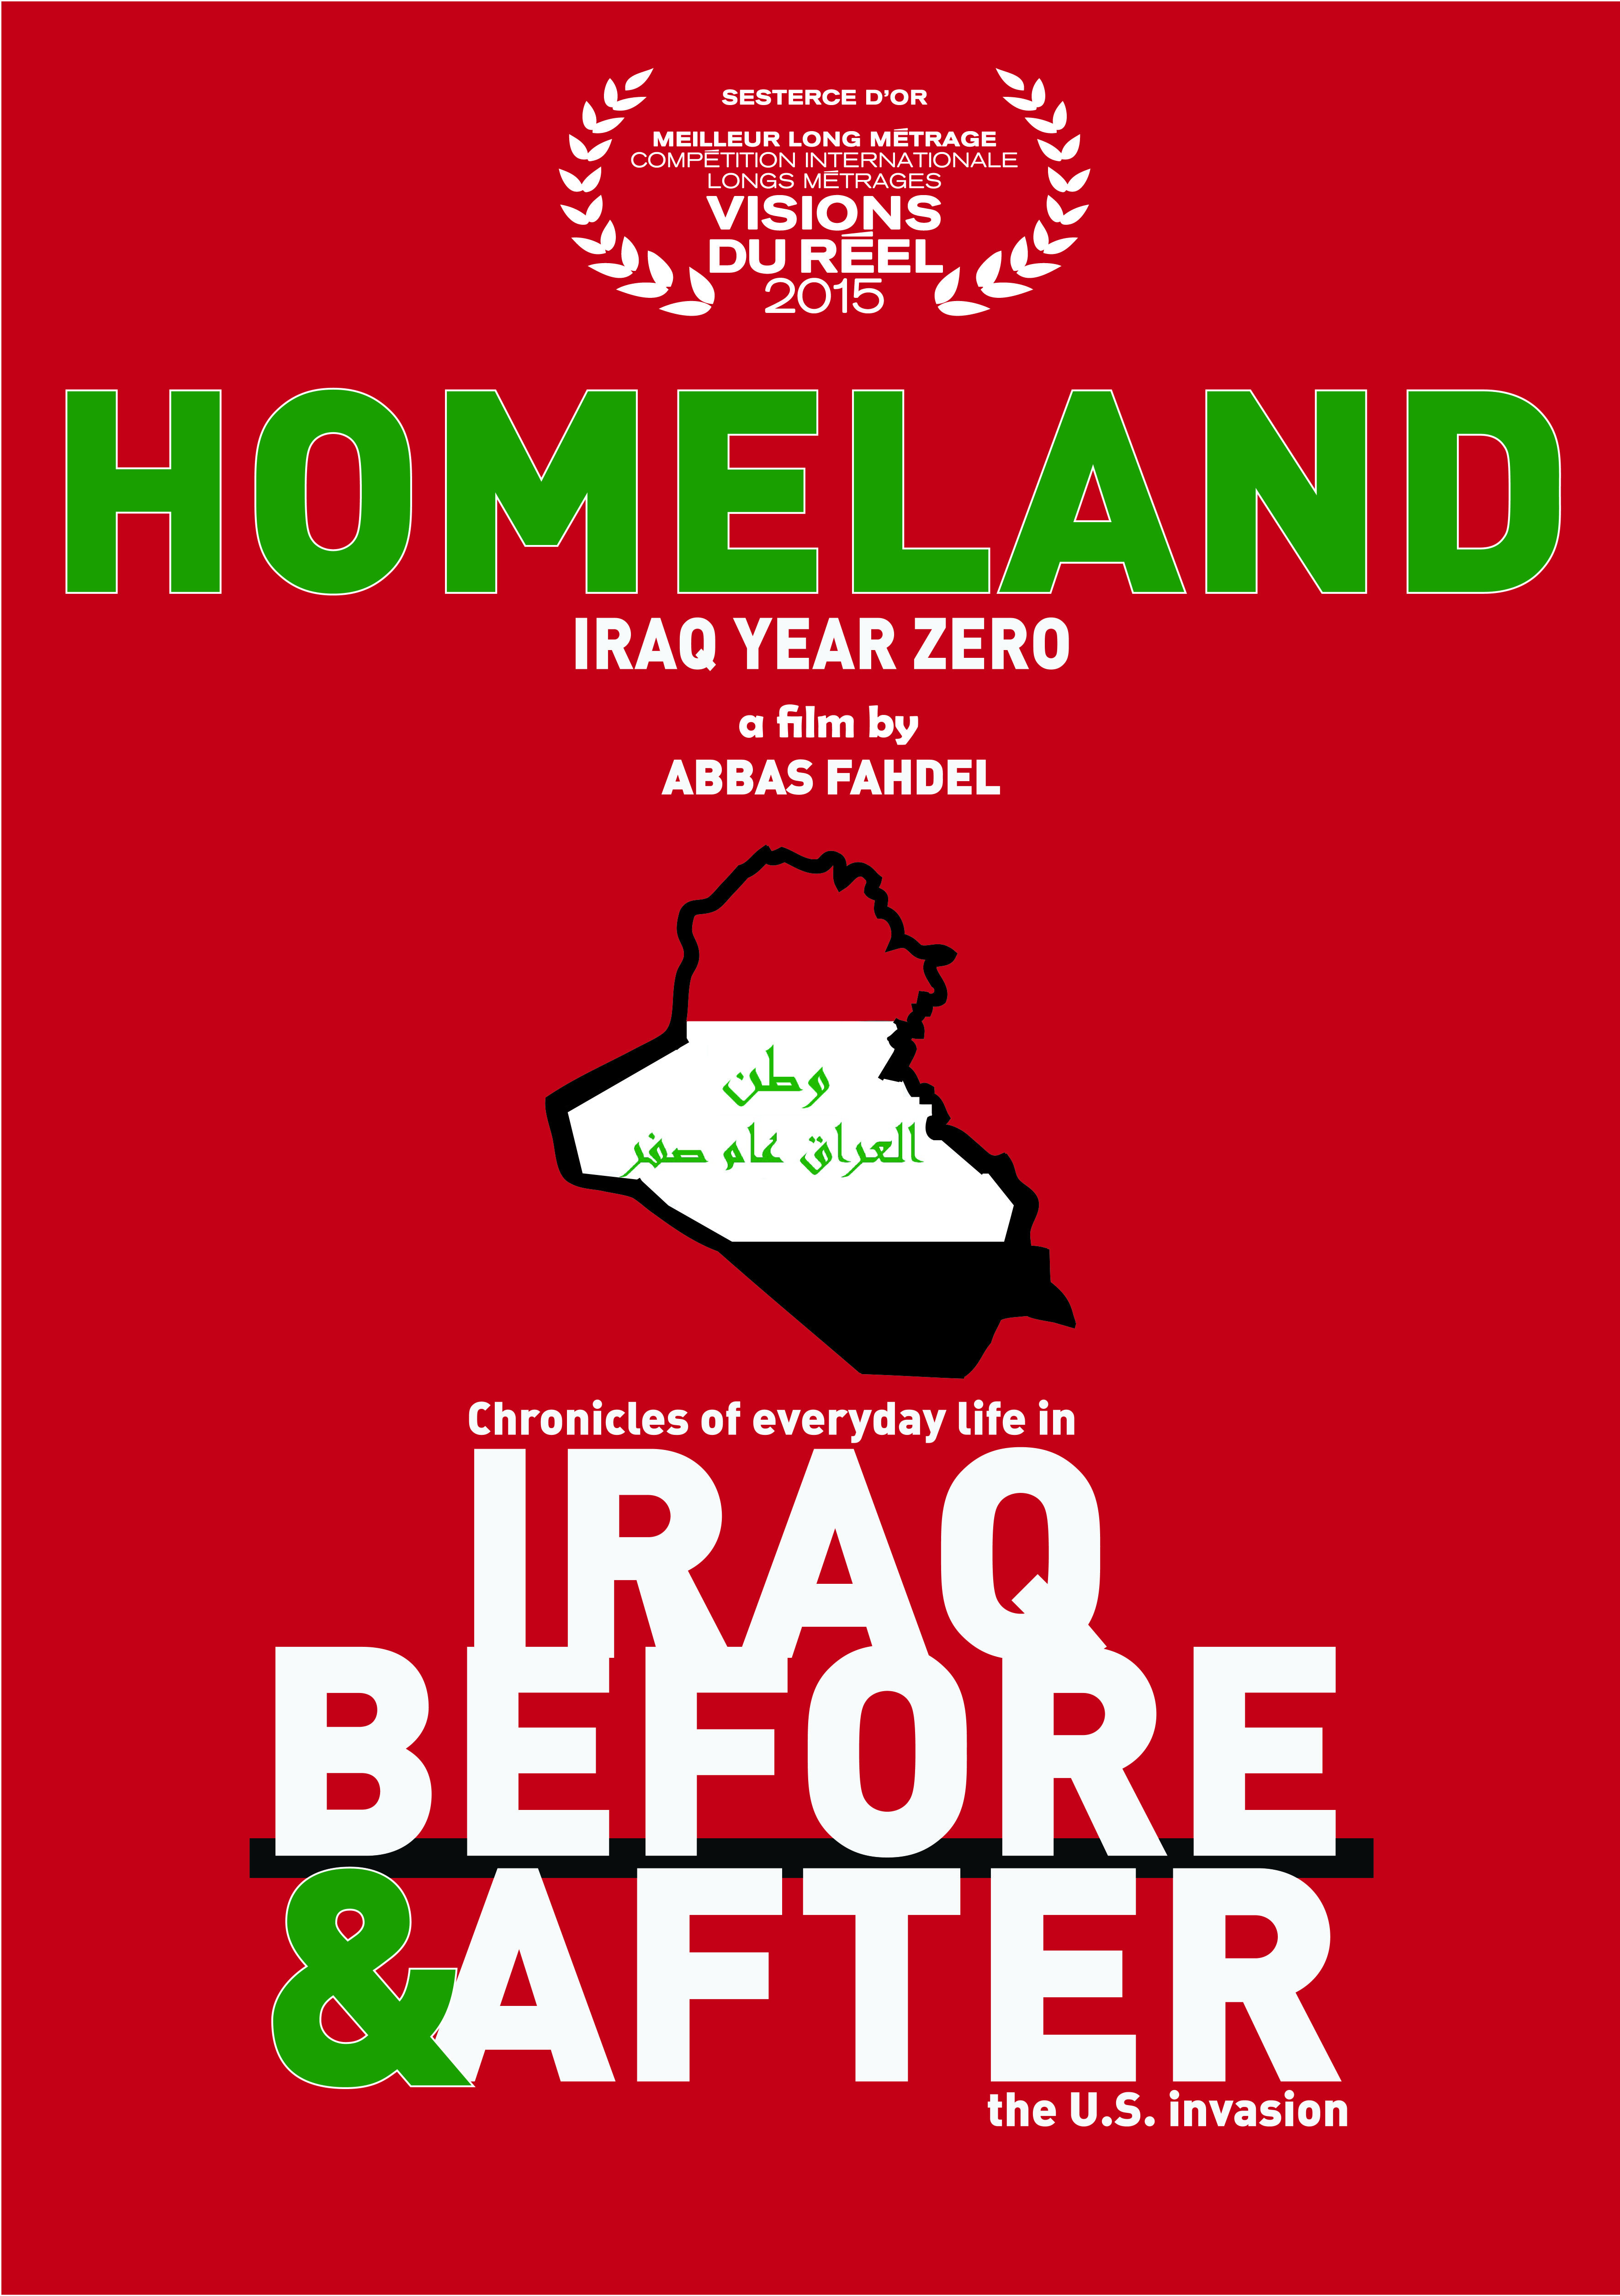 Homeland (Iraq Year Zero) (2015) Screenshot 3 